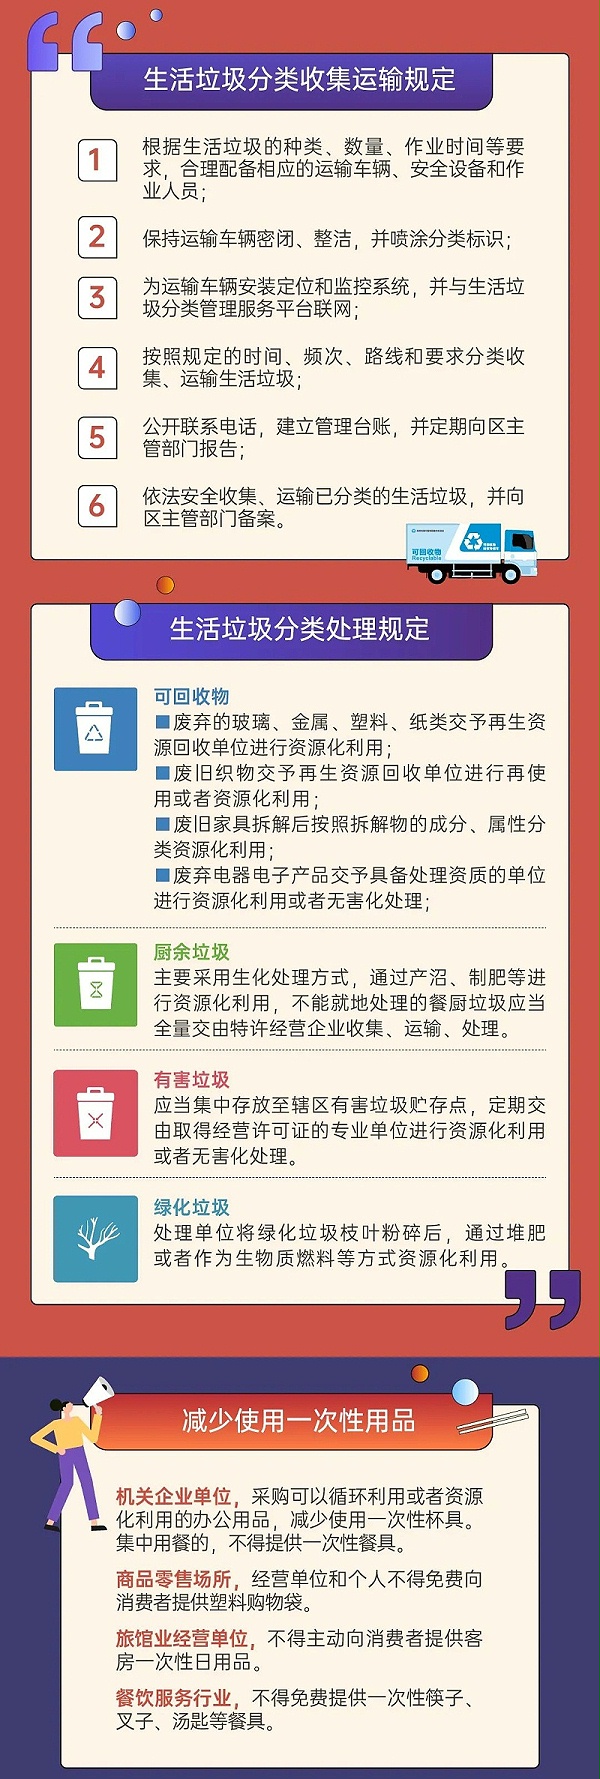 5深圳市生活垃圾分类管理条例正式实施-玉龙环保